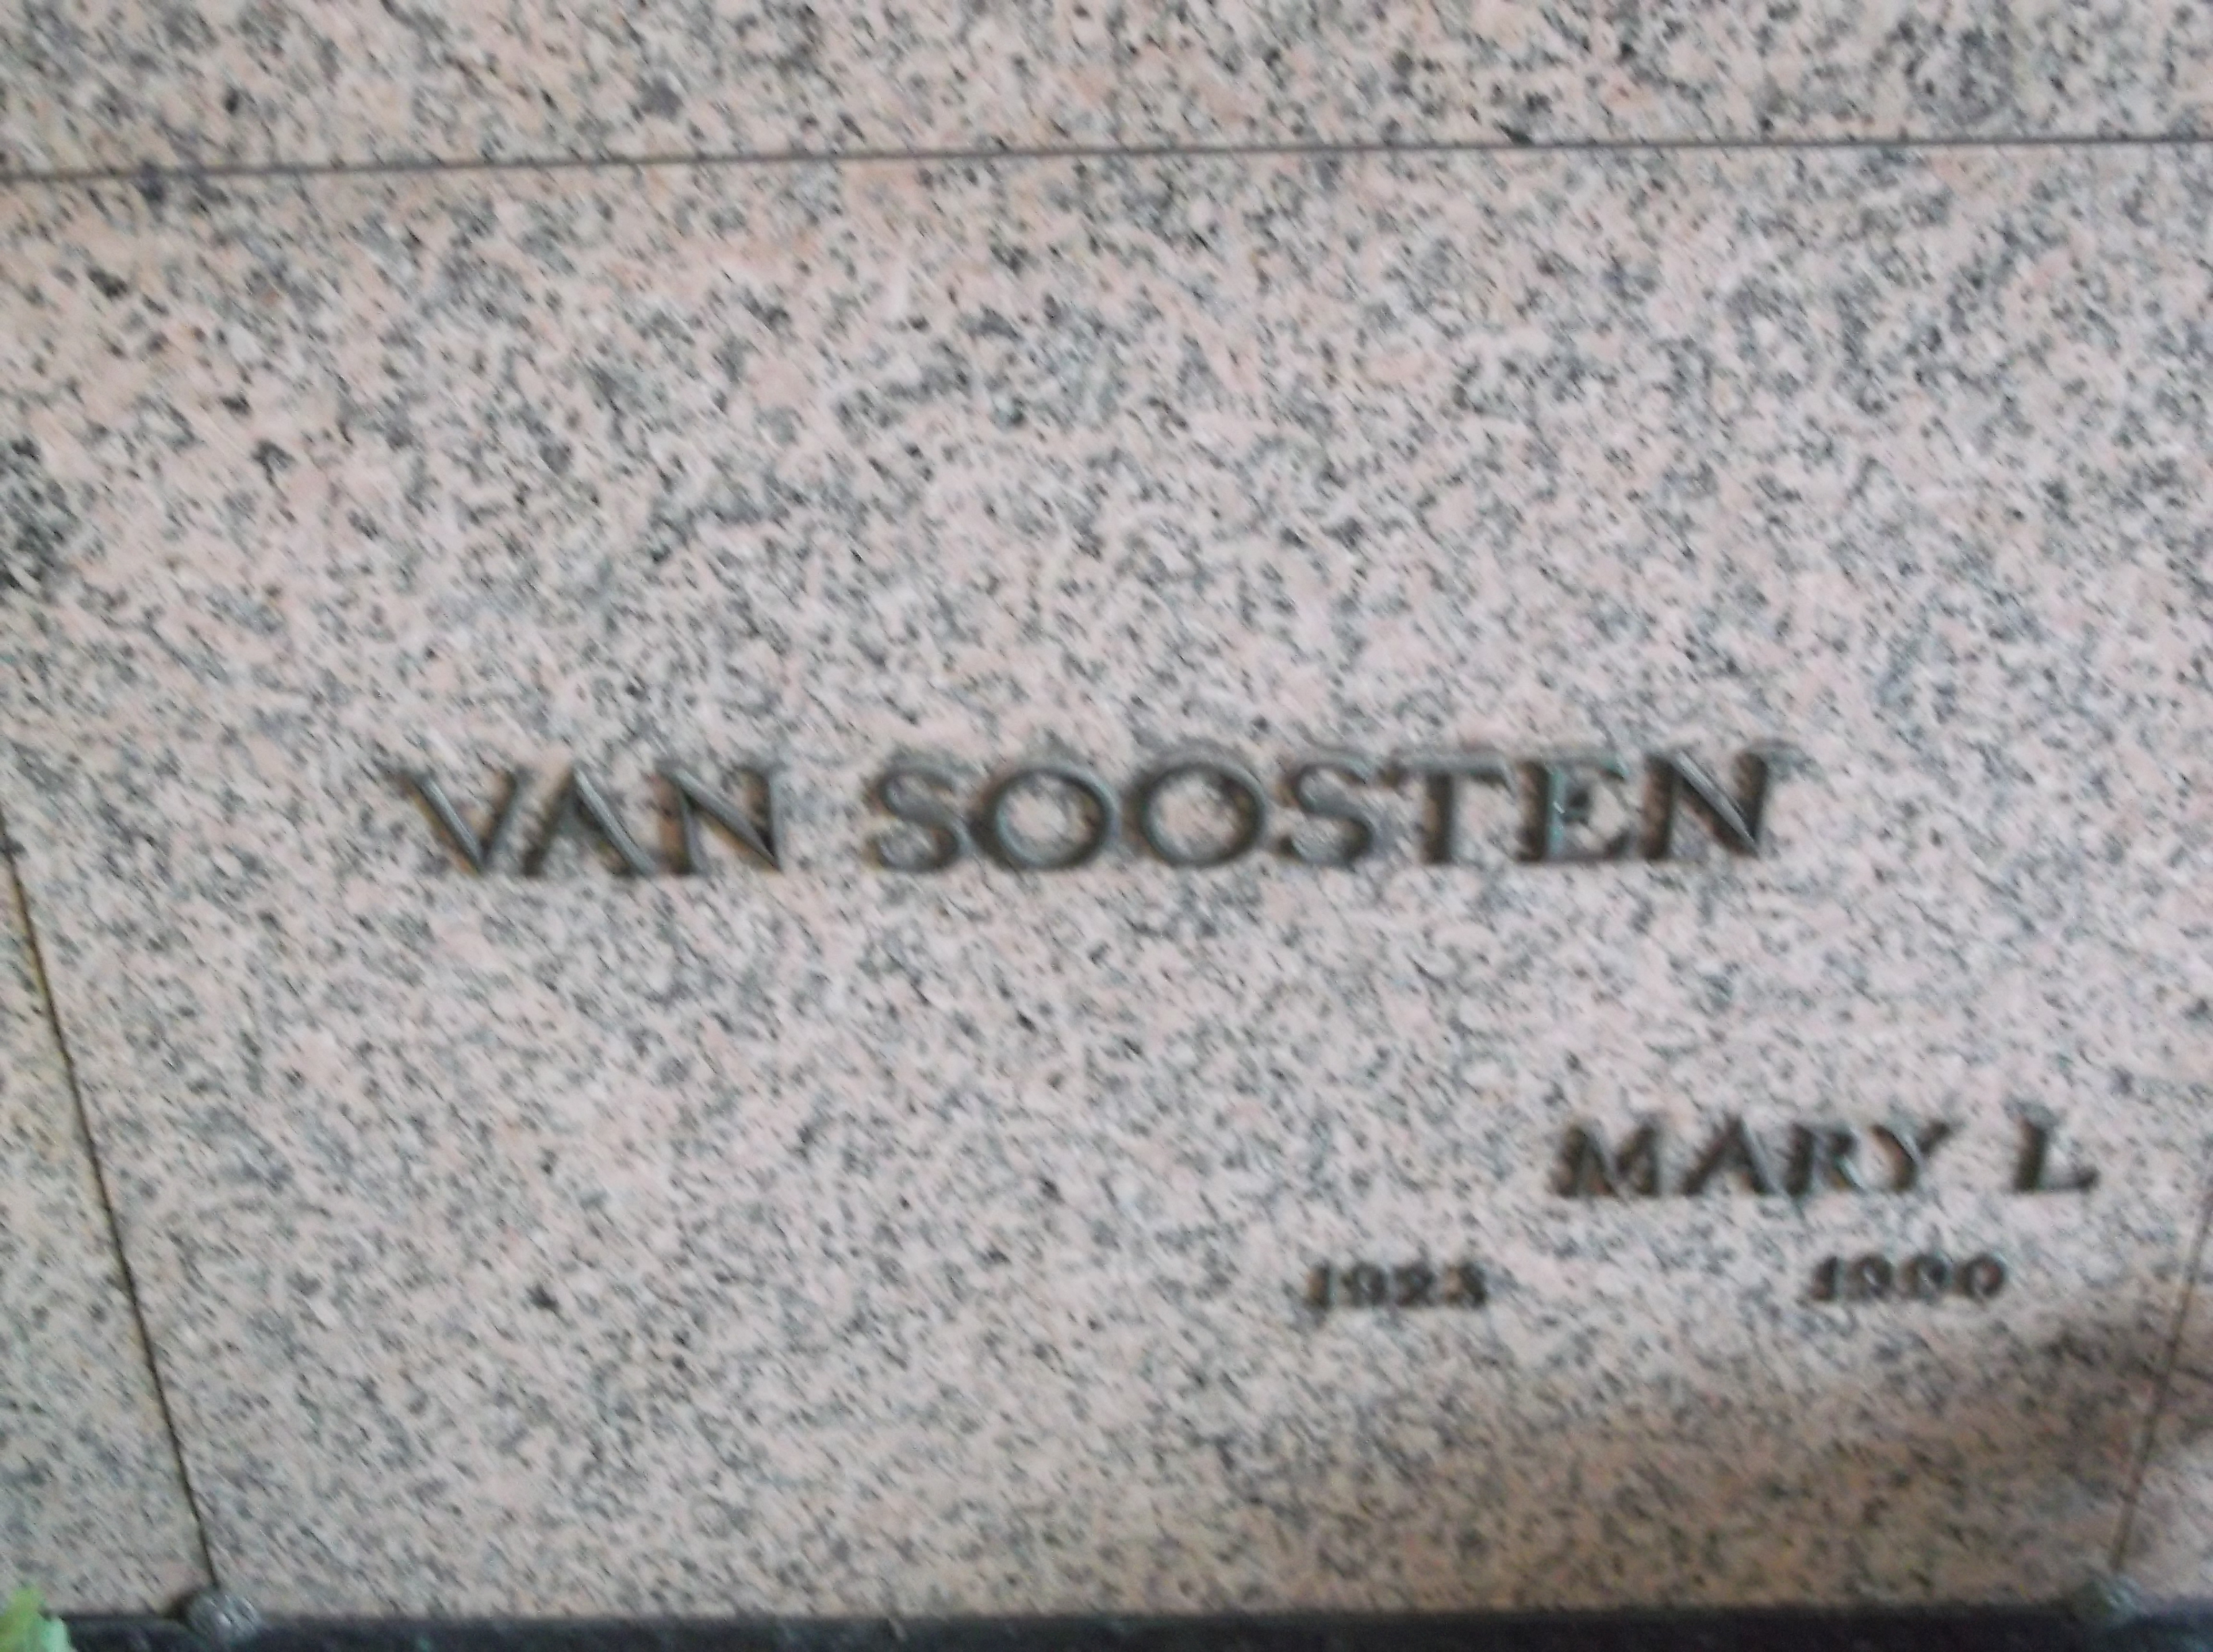 Mary L Van Soosten